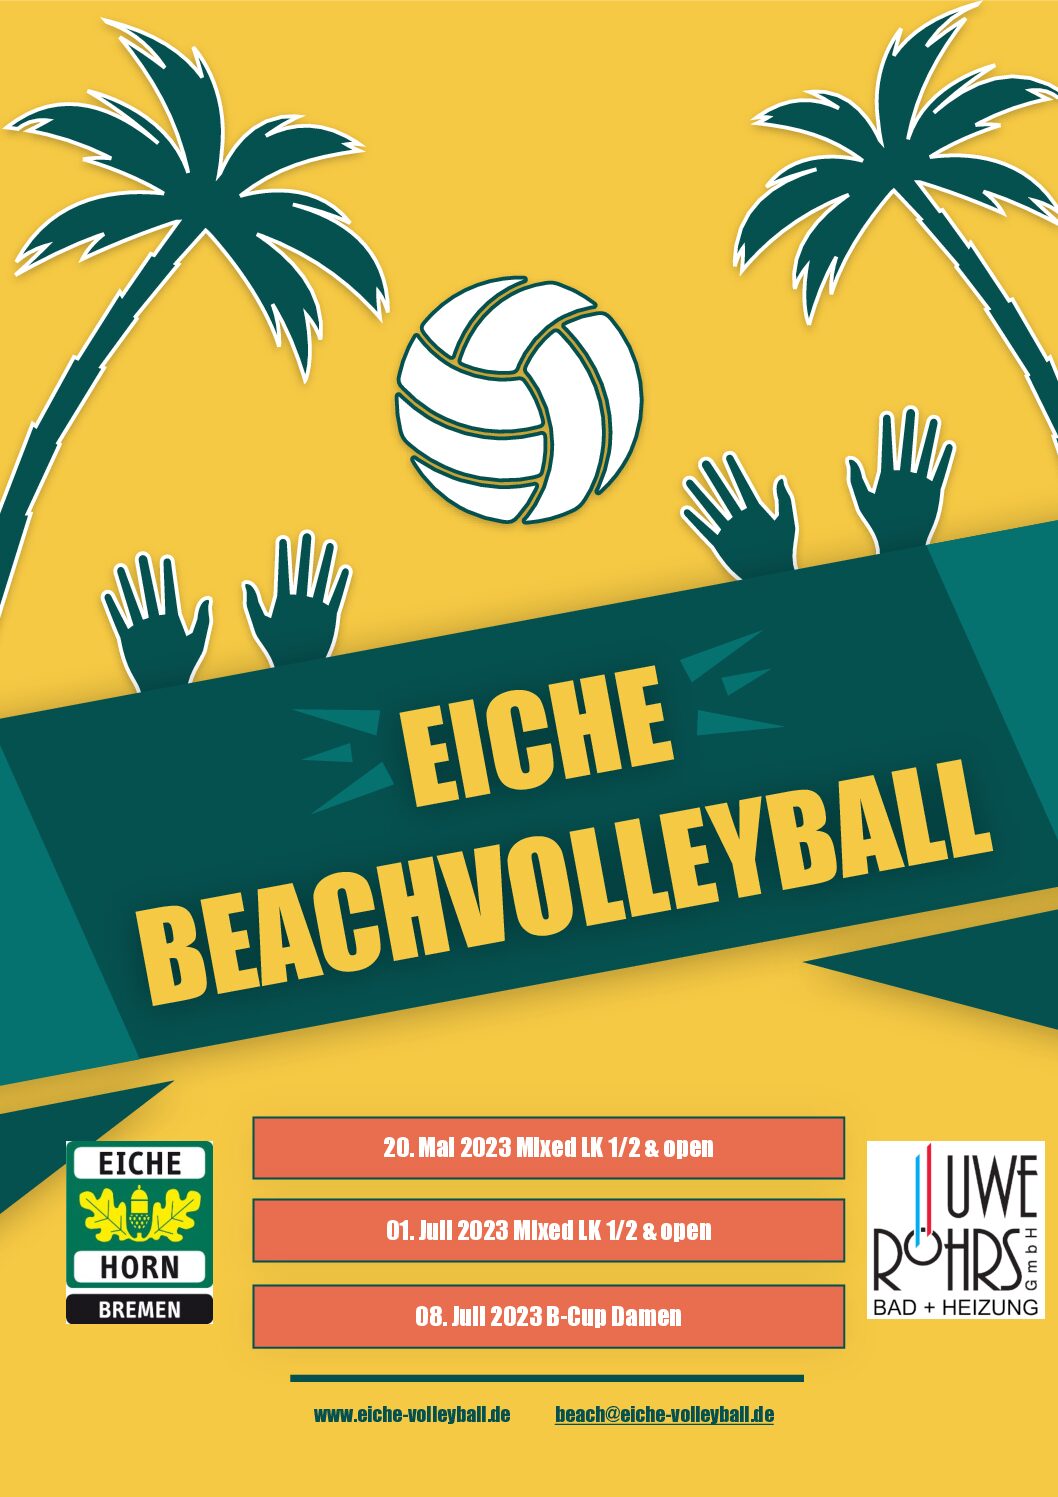 (c) Eiche-volleyball.de